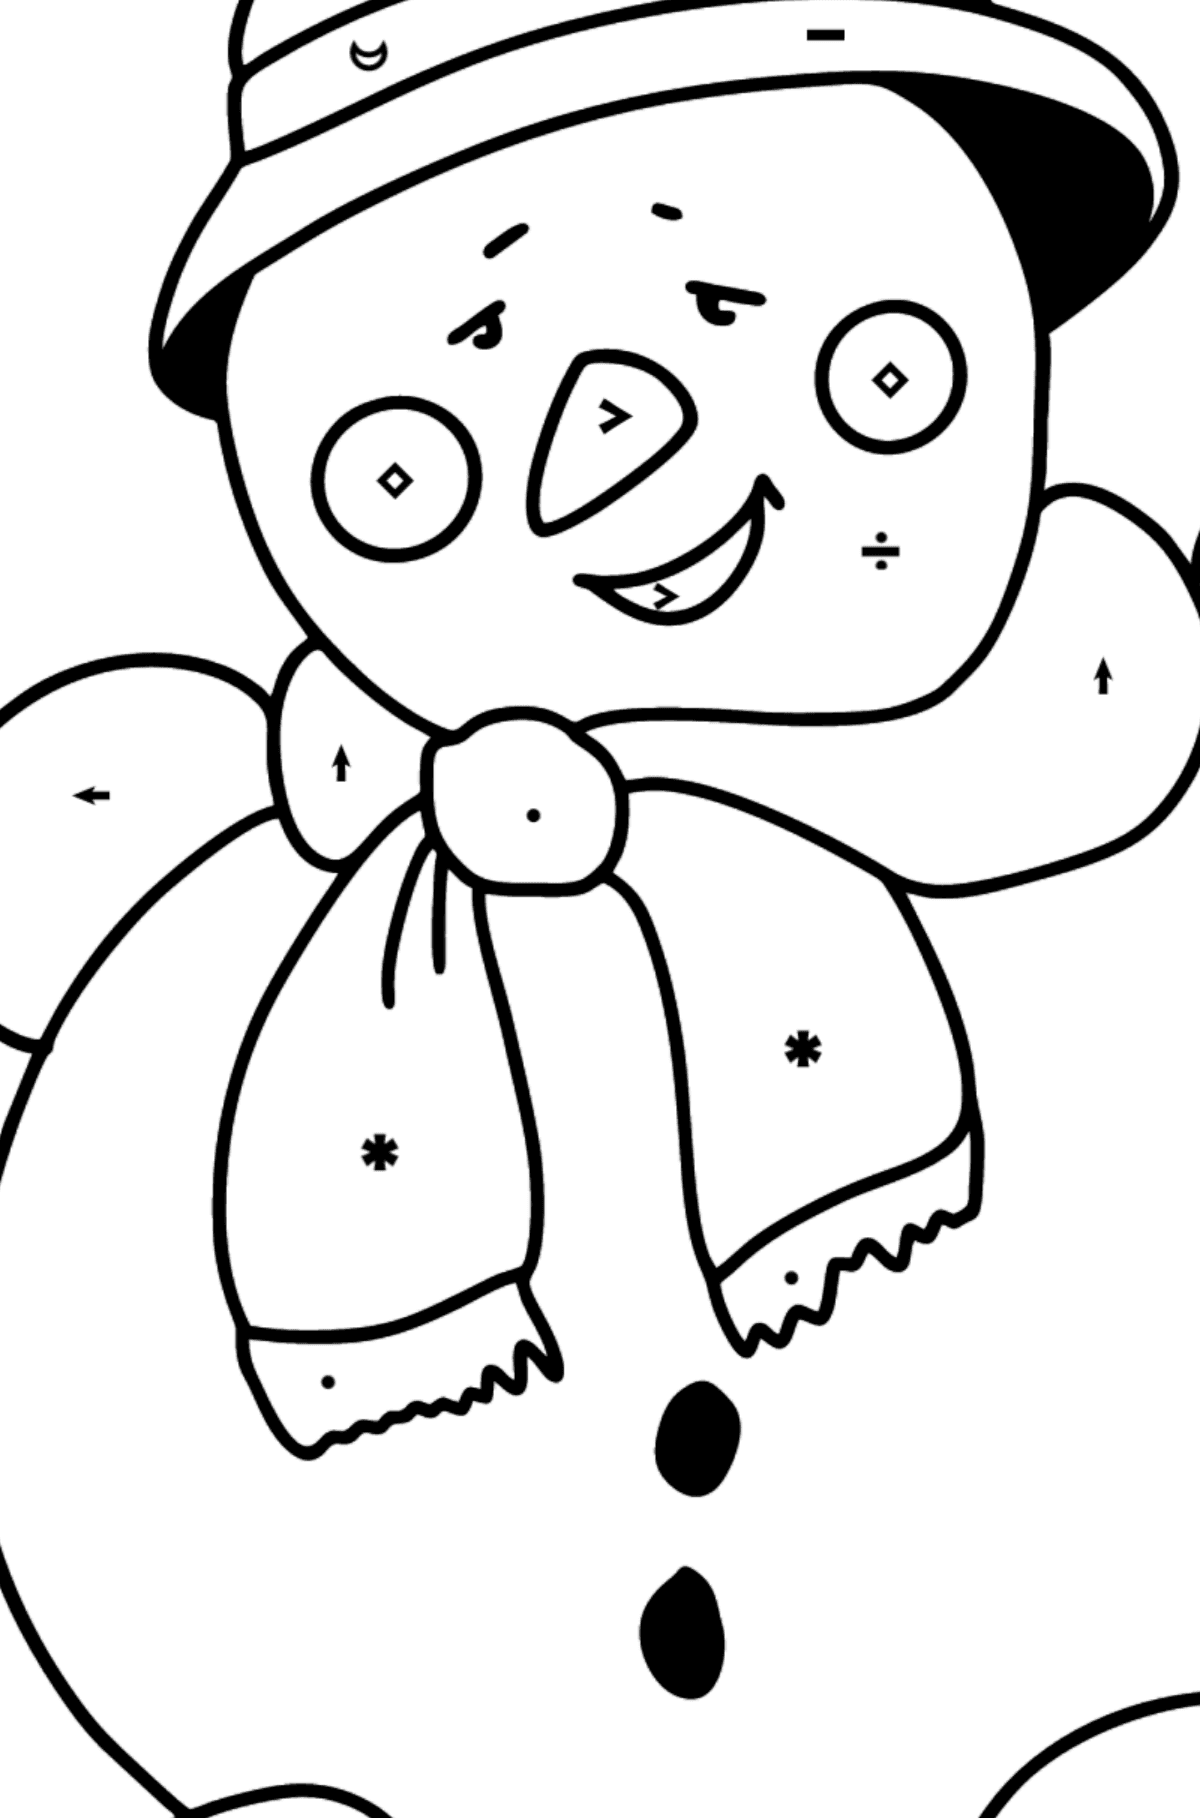 Dibujo para colorear de muñeco de nieve feliz - Colorear por Símbolos para Niños